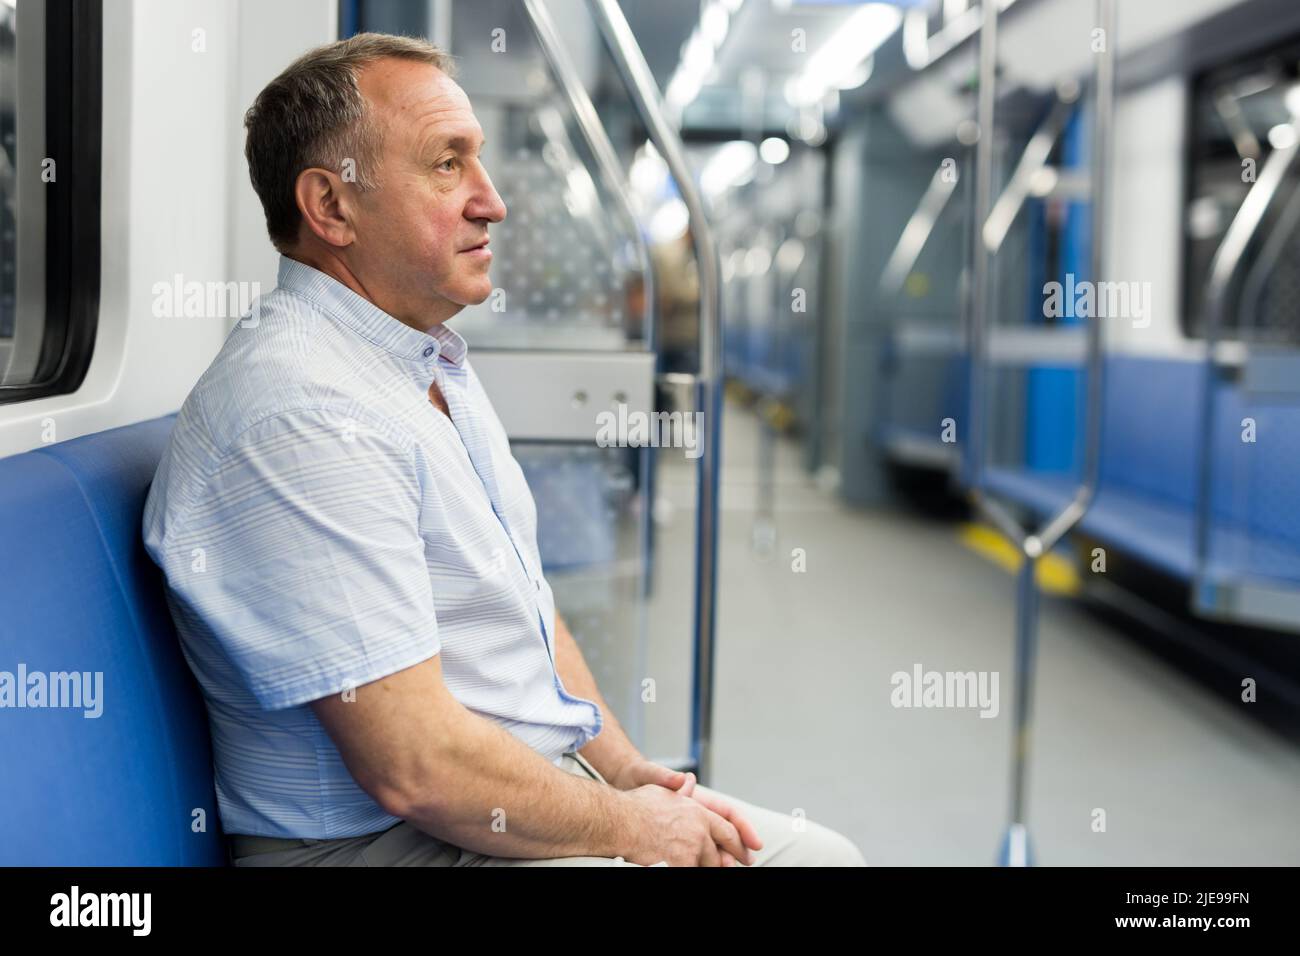 Homme d'âge moyen assis dans une voiture de métro Banque D'Images